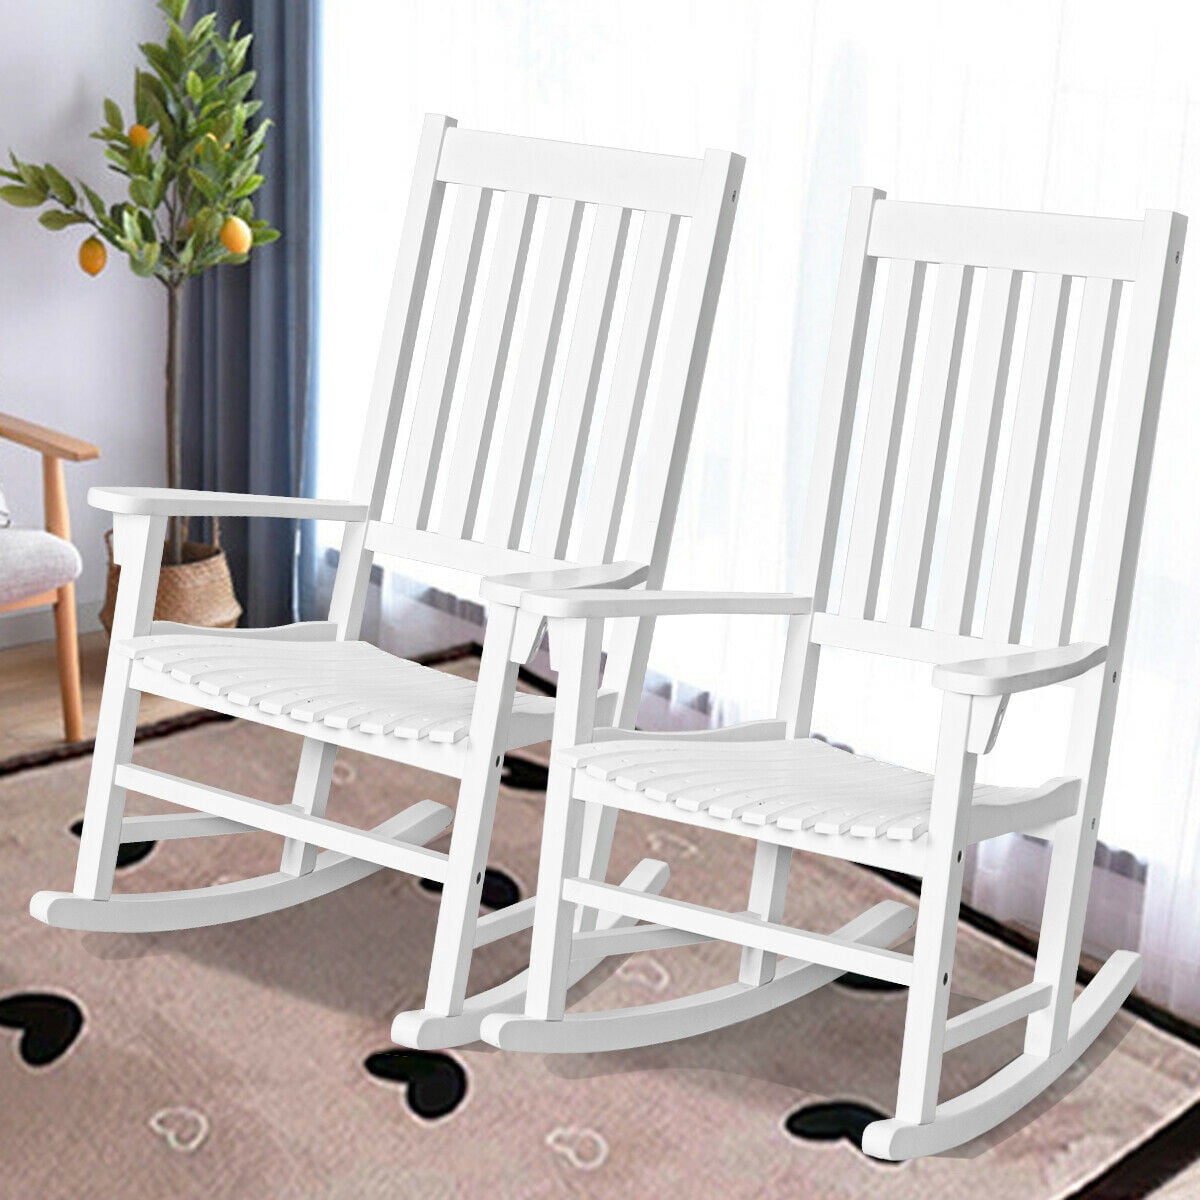 Outdoor Porch Rocker Seat Rocking Chair White Wood Furniture Armchair Garden New 